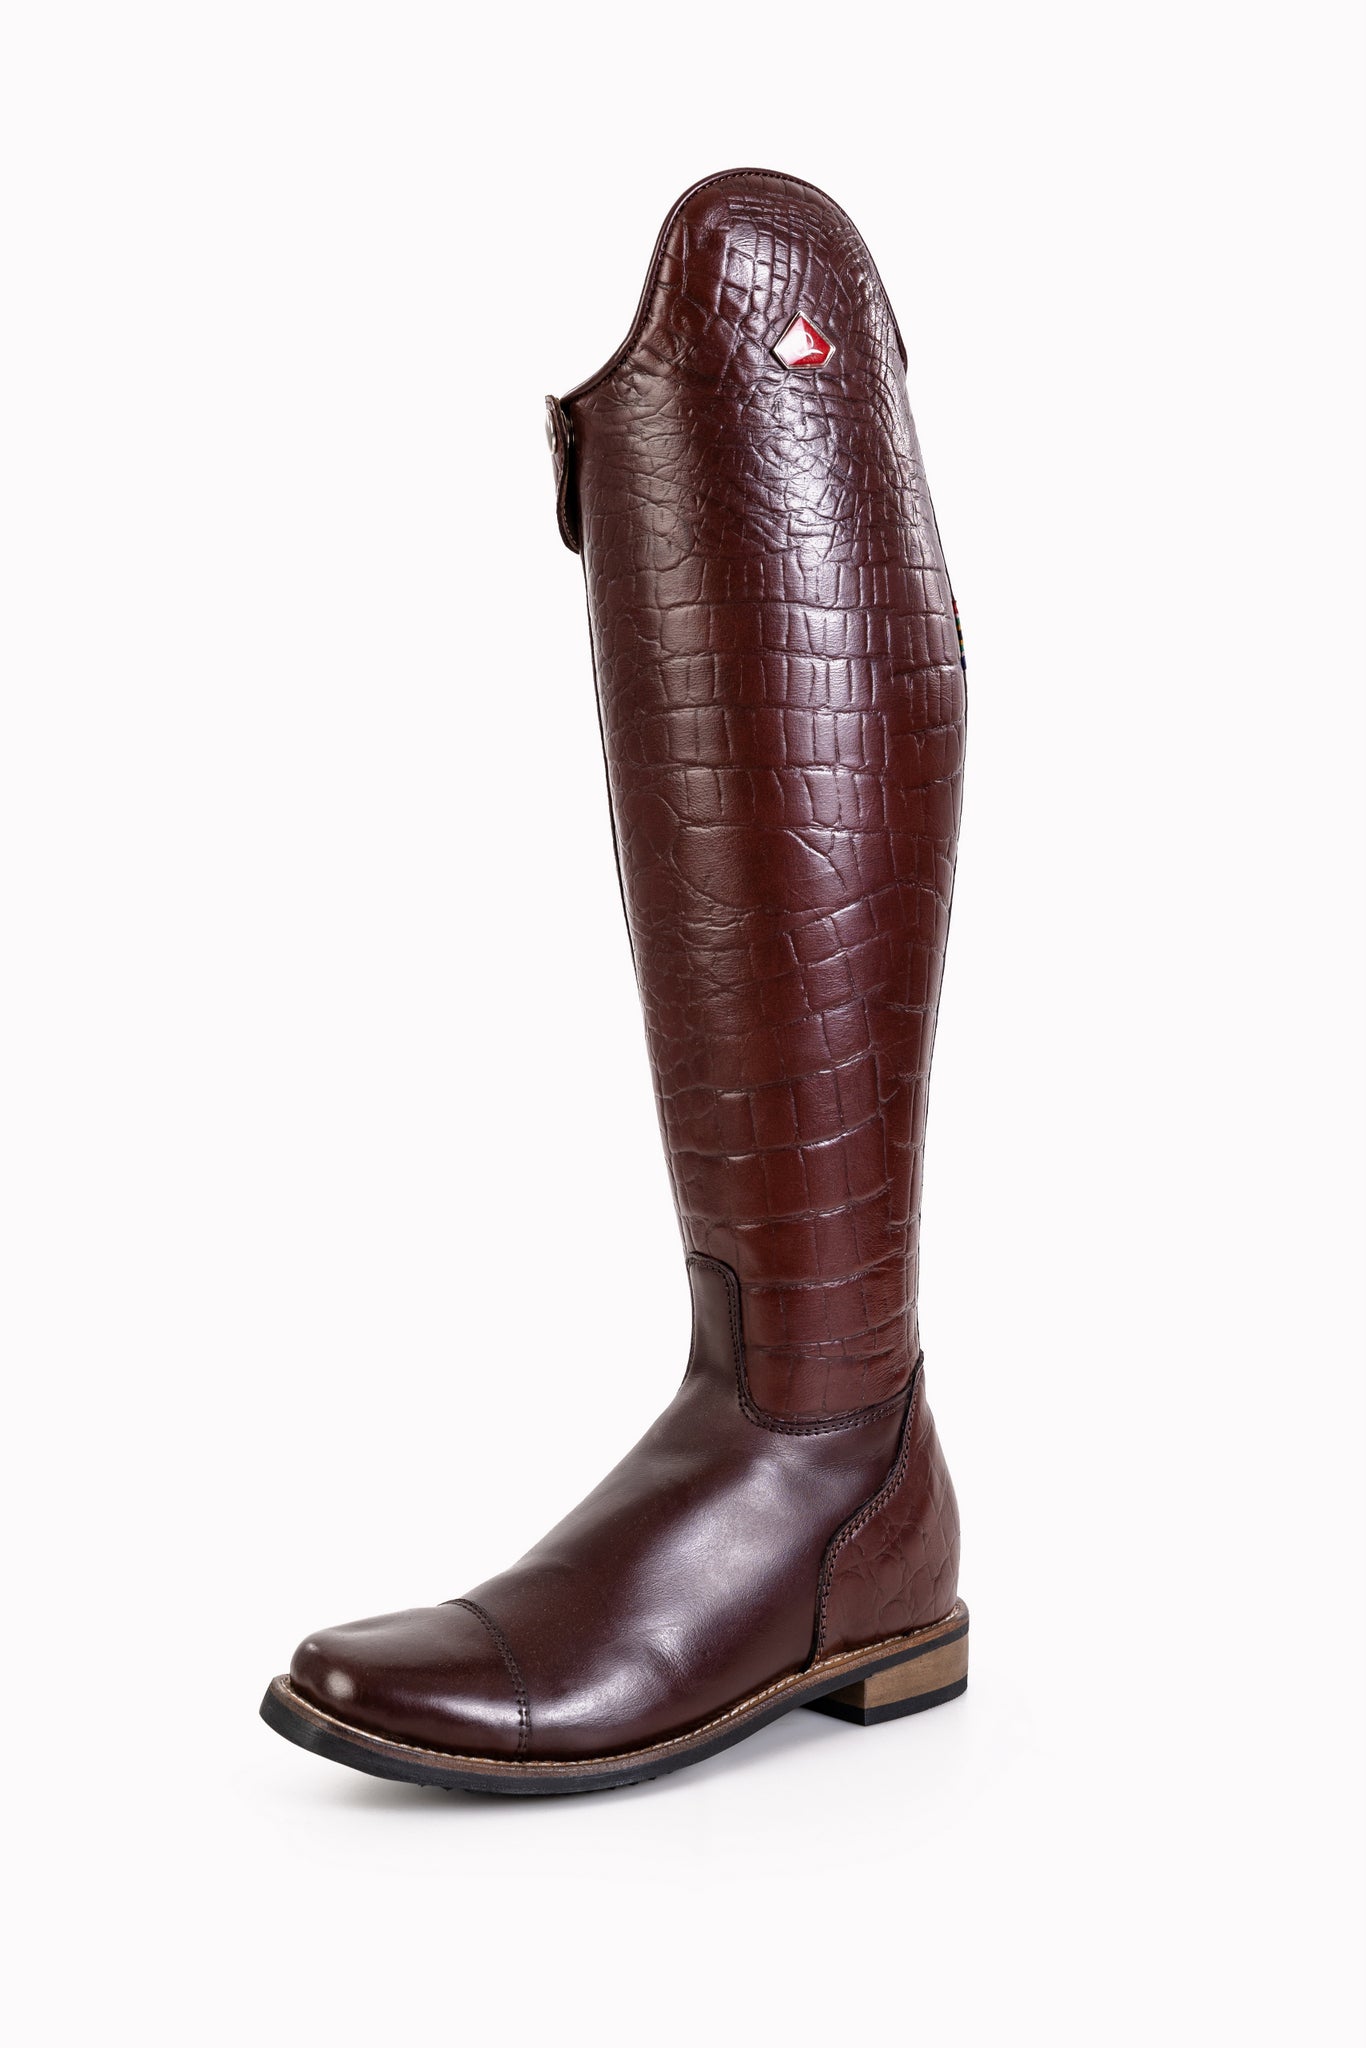 Danai Croc Long boots